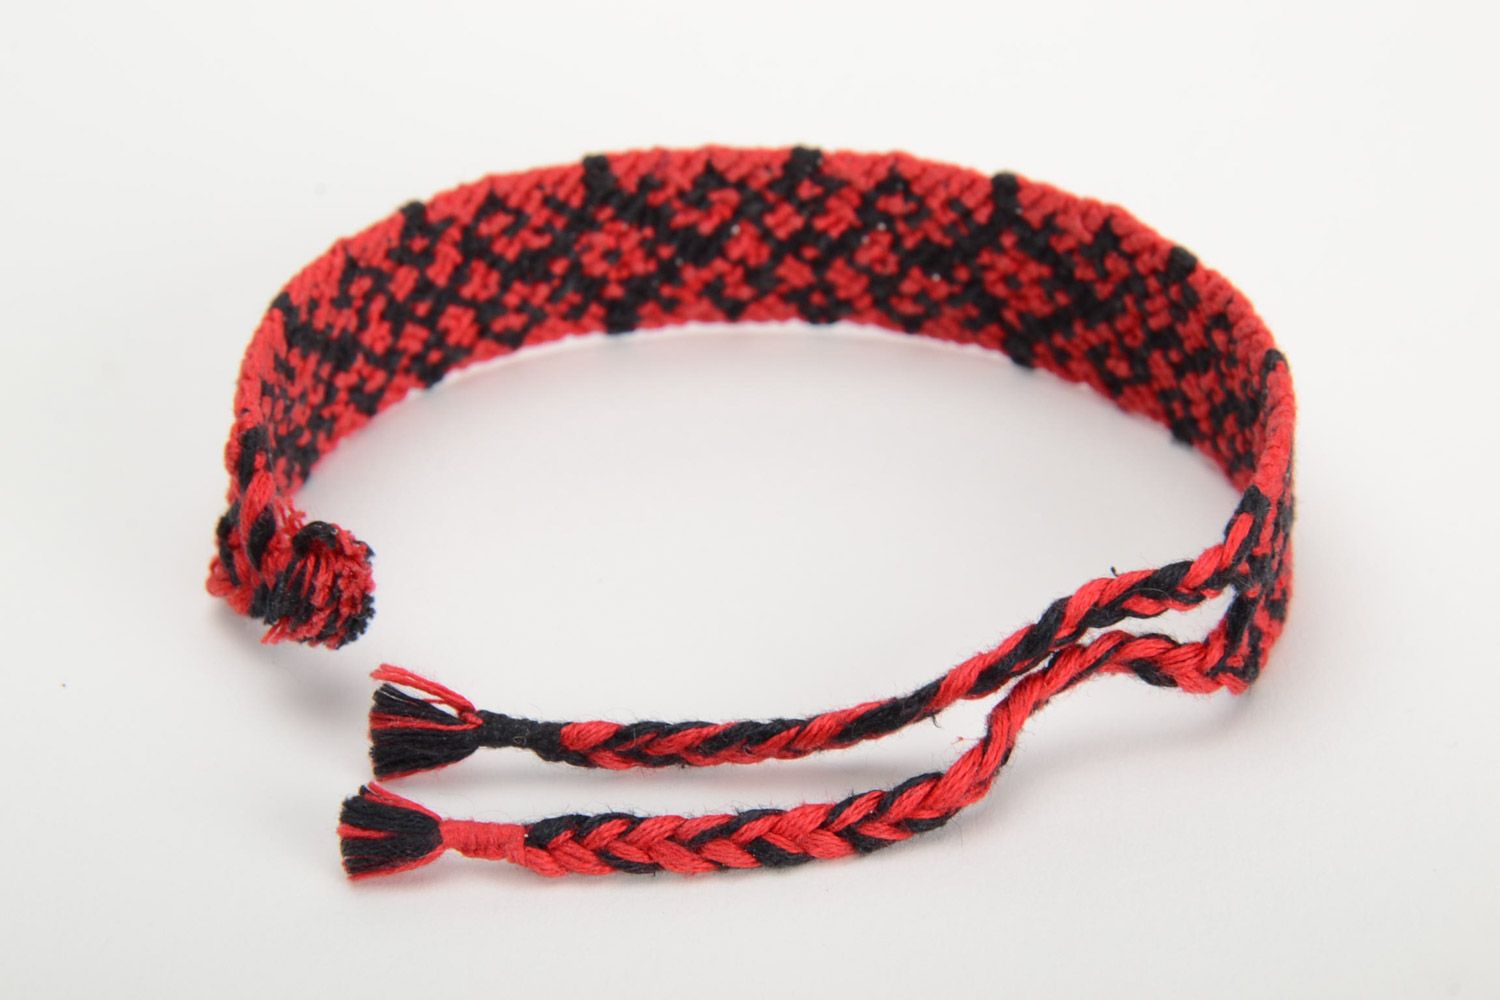 Текстильный браслет из ниток наручный красный с черным орнаментом ручная работа фото 3